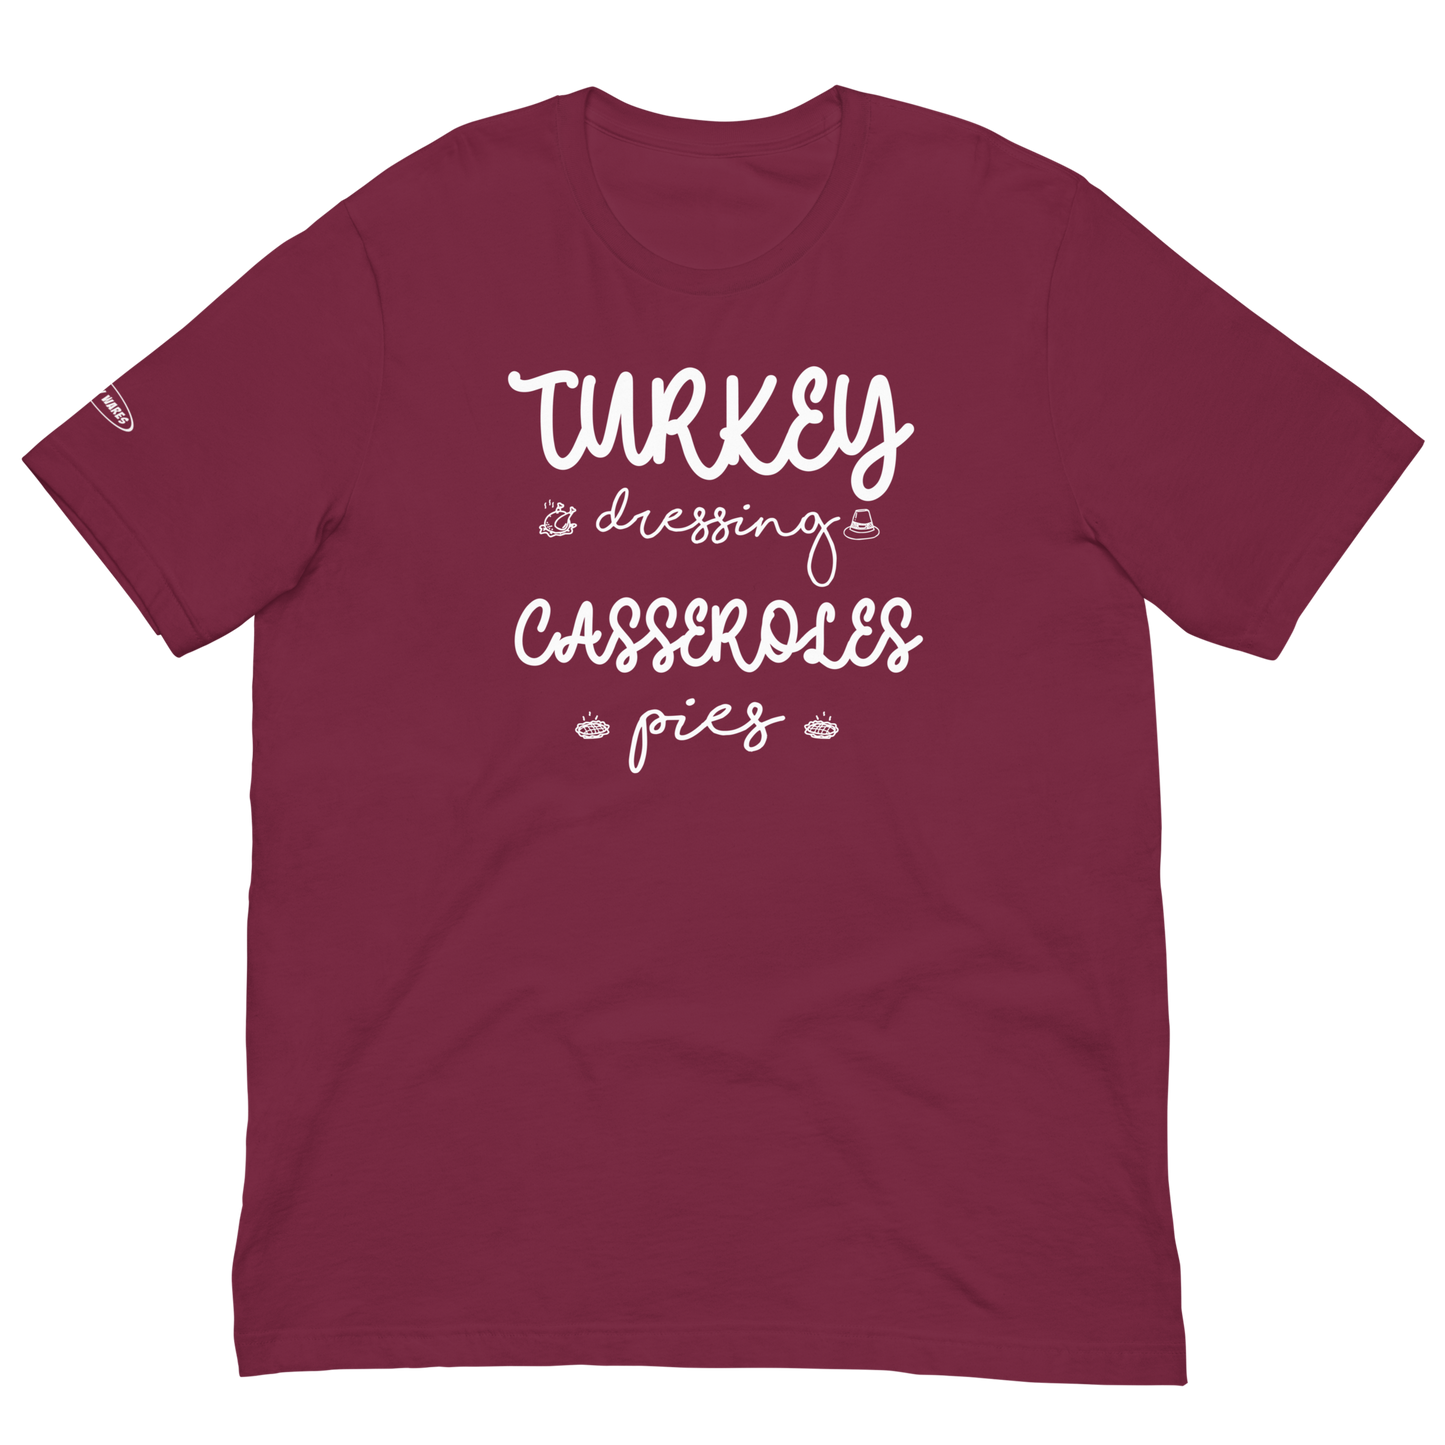 Fall Turkey, Dressing, Casseroles, Pies - Fun T-shirt